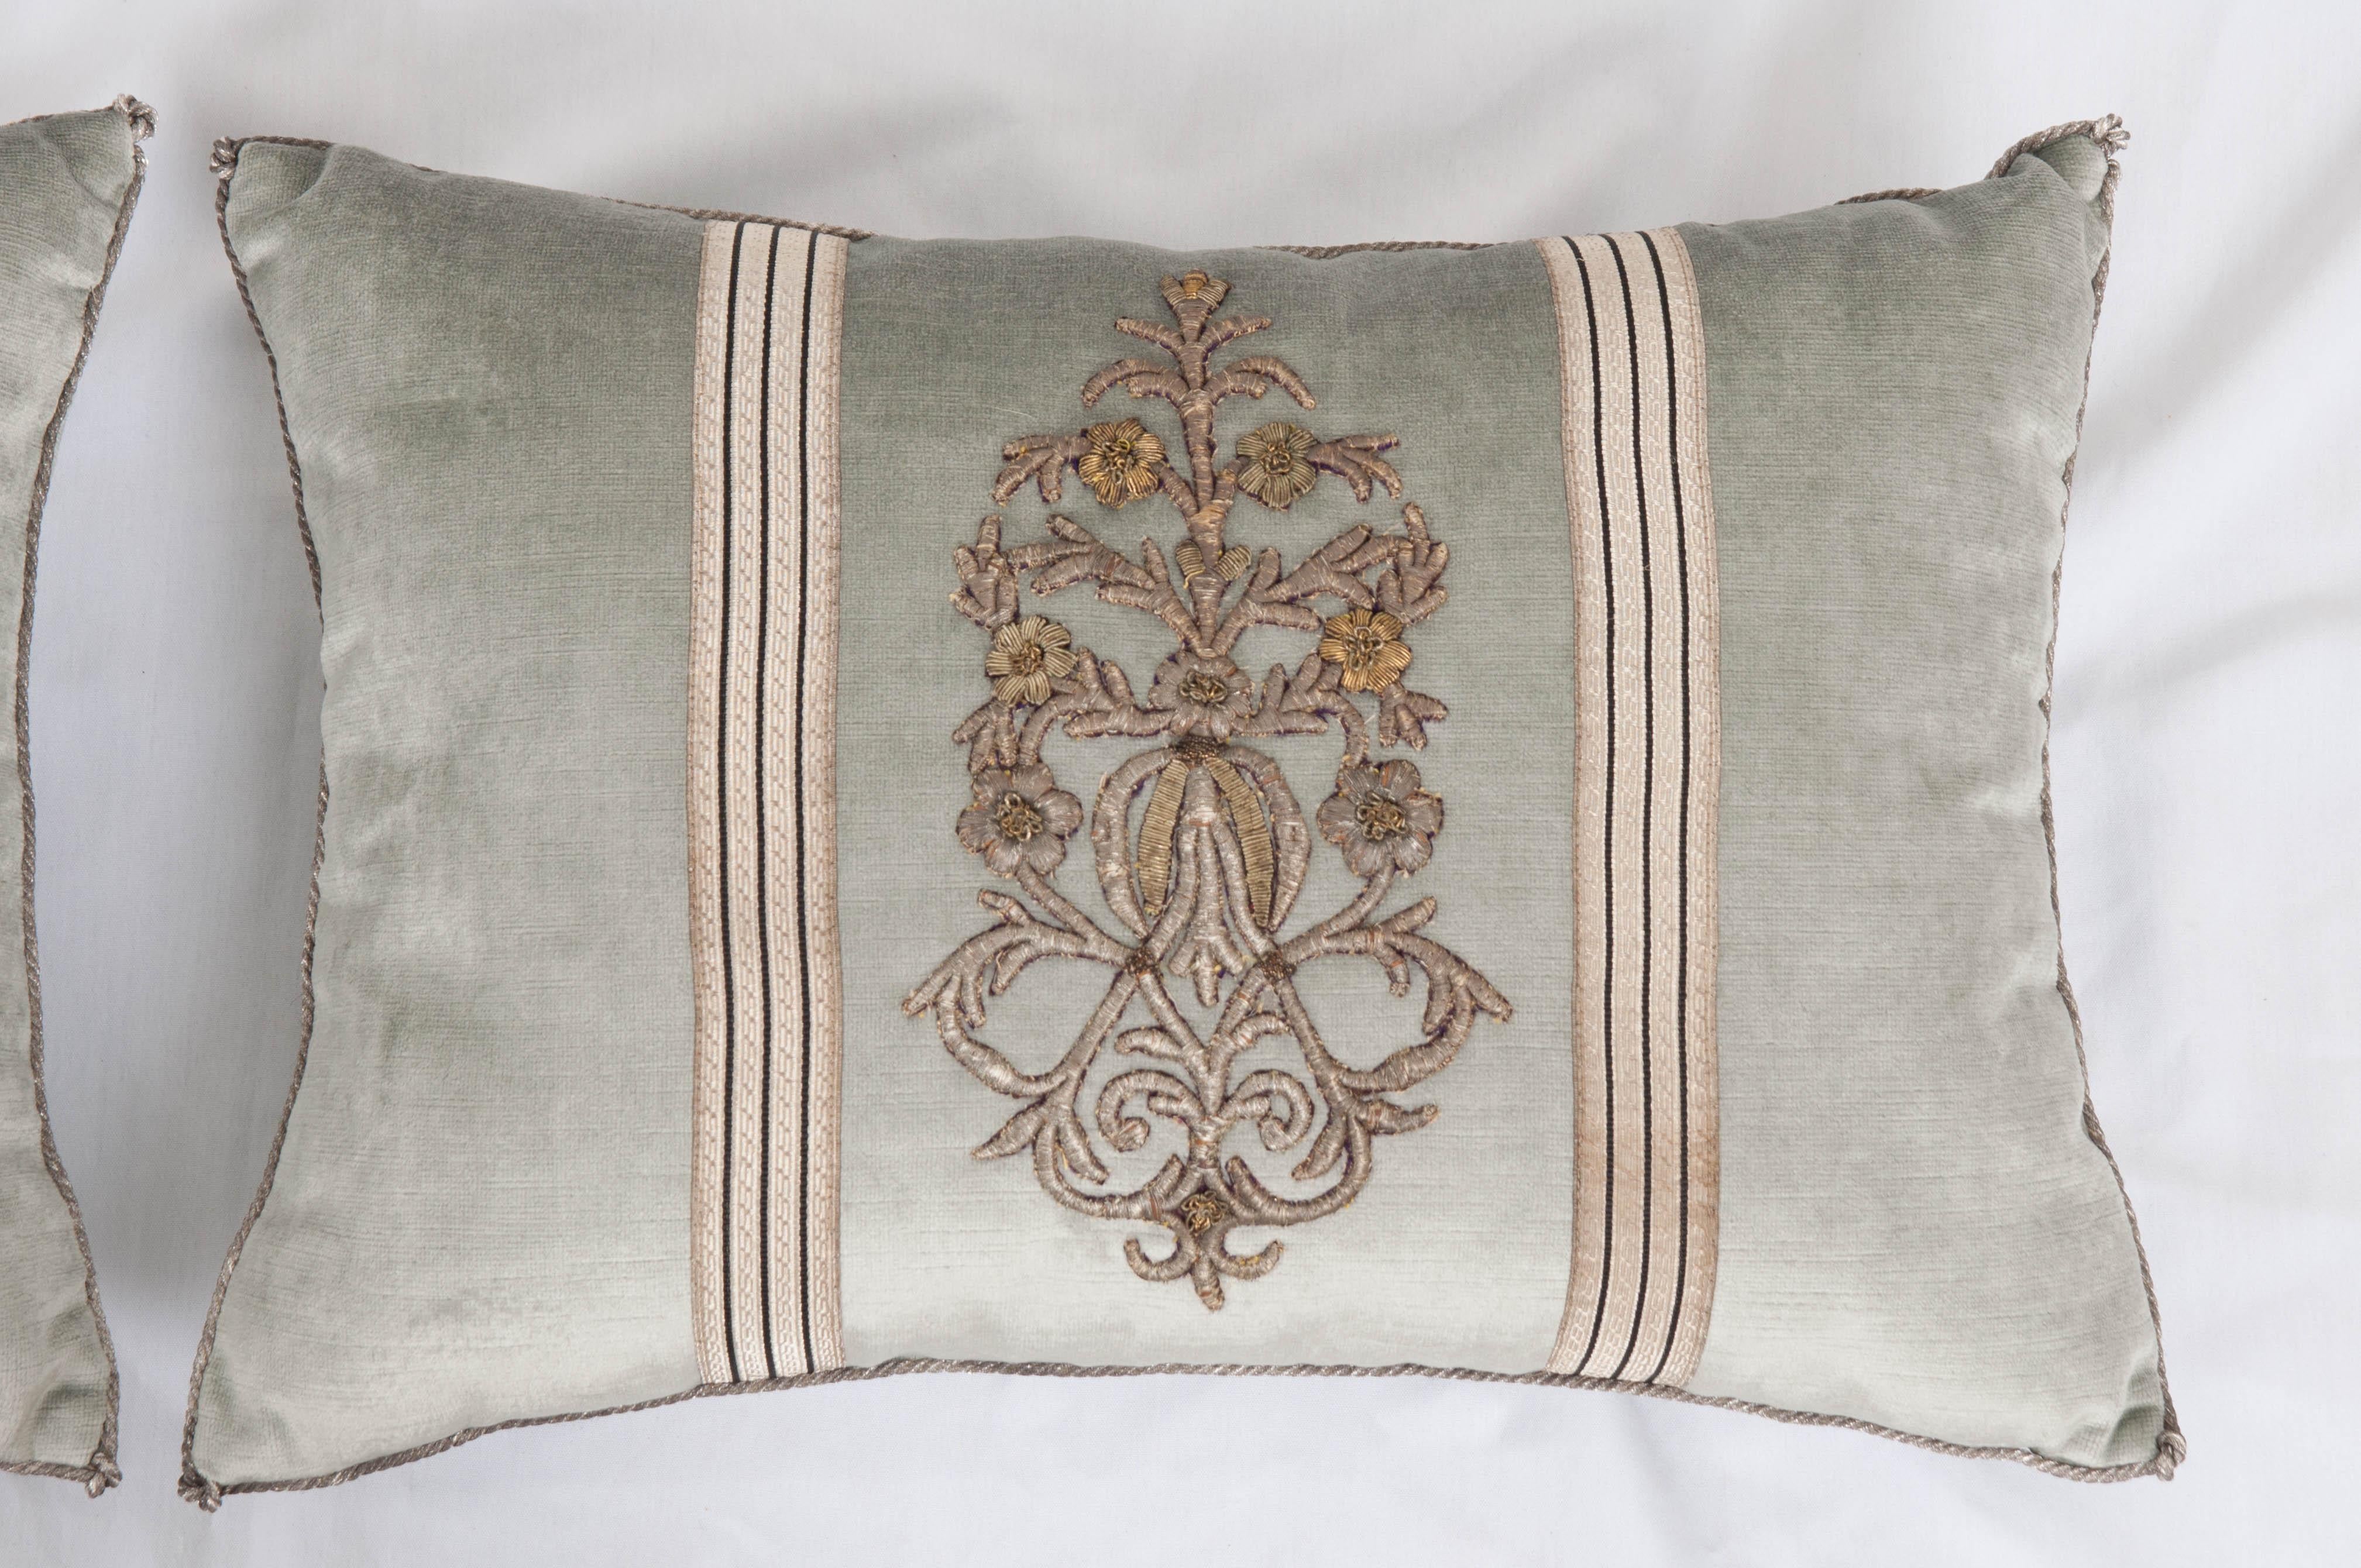 Contemporary Antique Textile Pillows by B. Viz Design